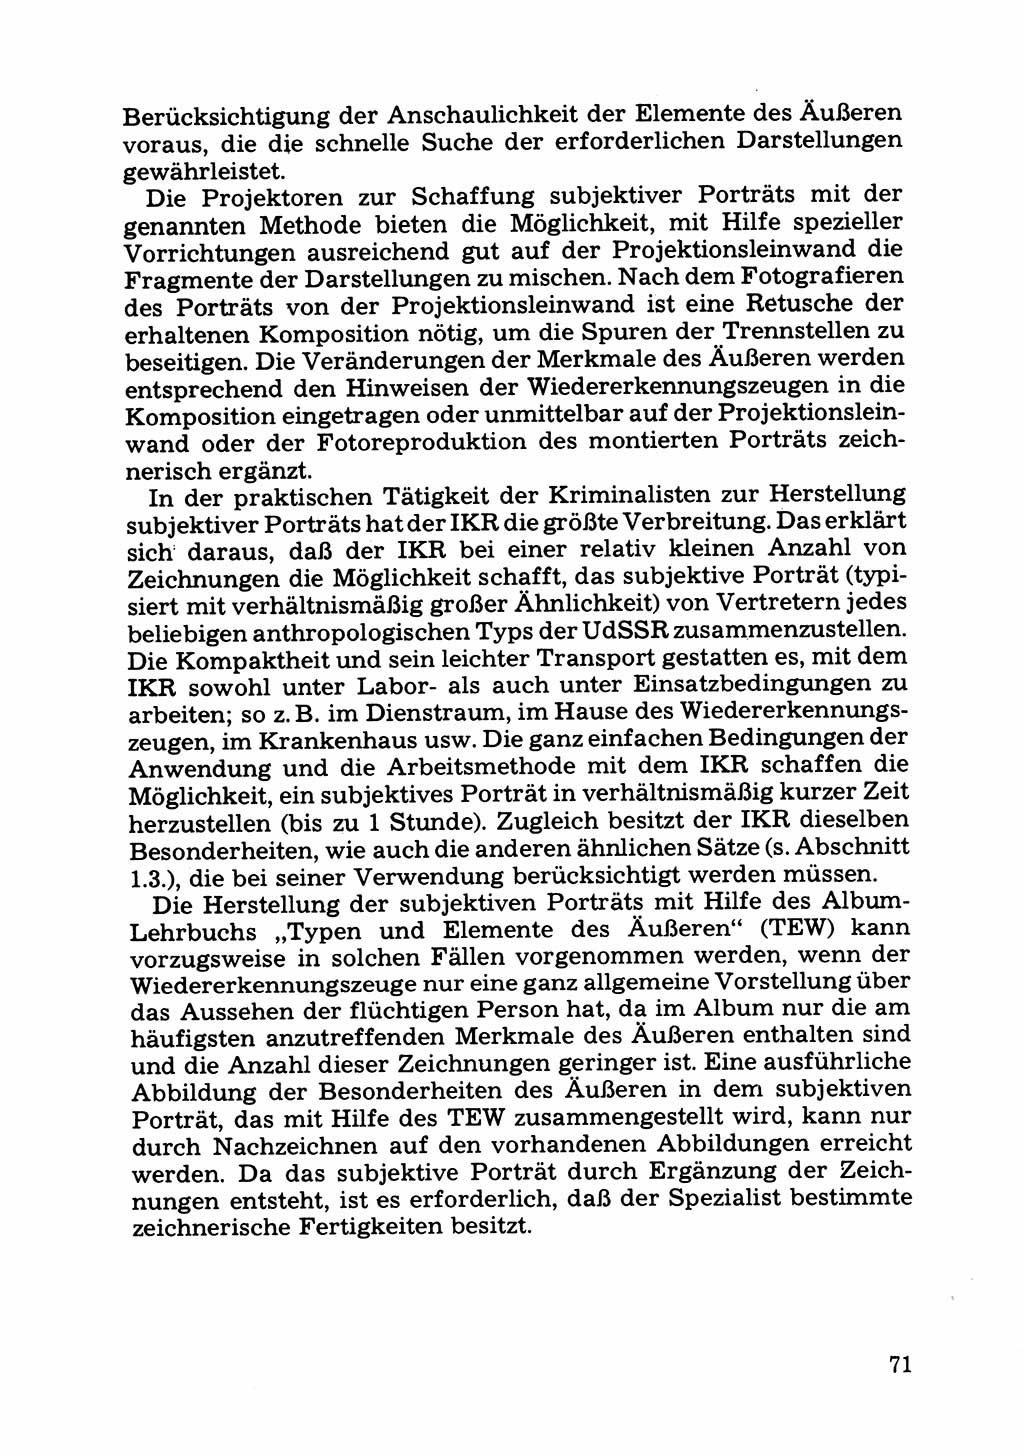 Das subjektive Porträt [Deutsche Demokratische Republik (DDR)] 1981, Seite 71 (Subj. Port. DDR 1981, S. 71)